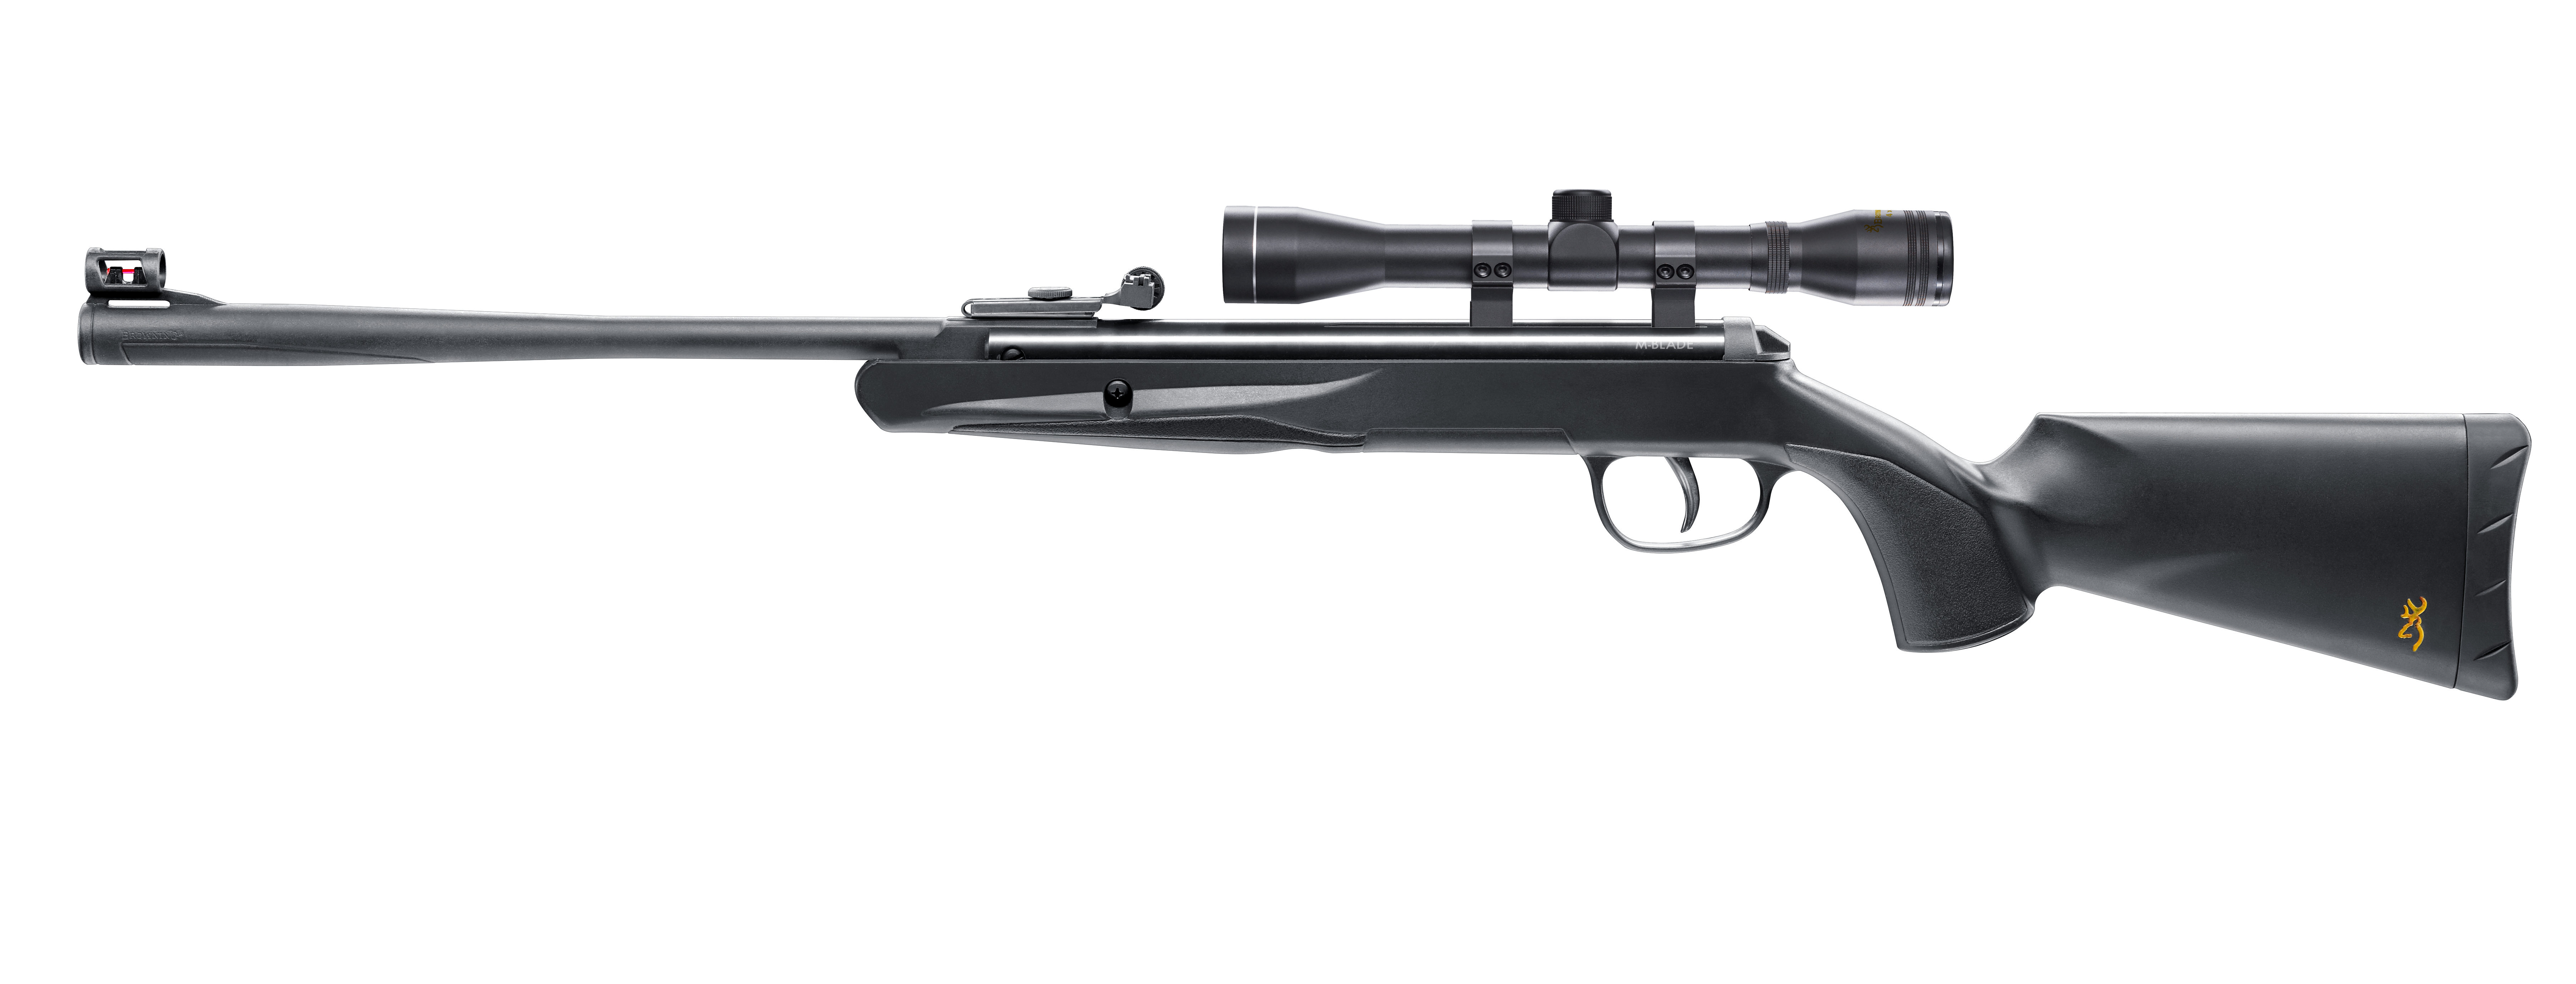 BROWNING (Umarex) Spring Operated Airgun M-Blade